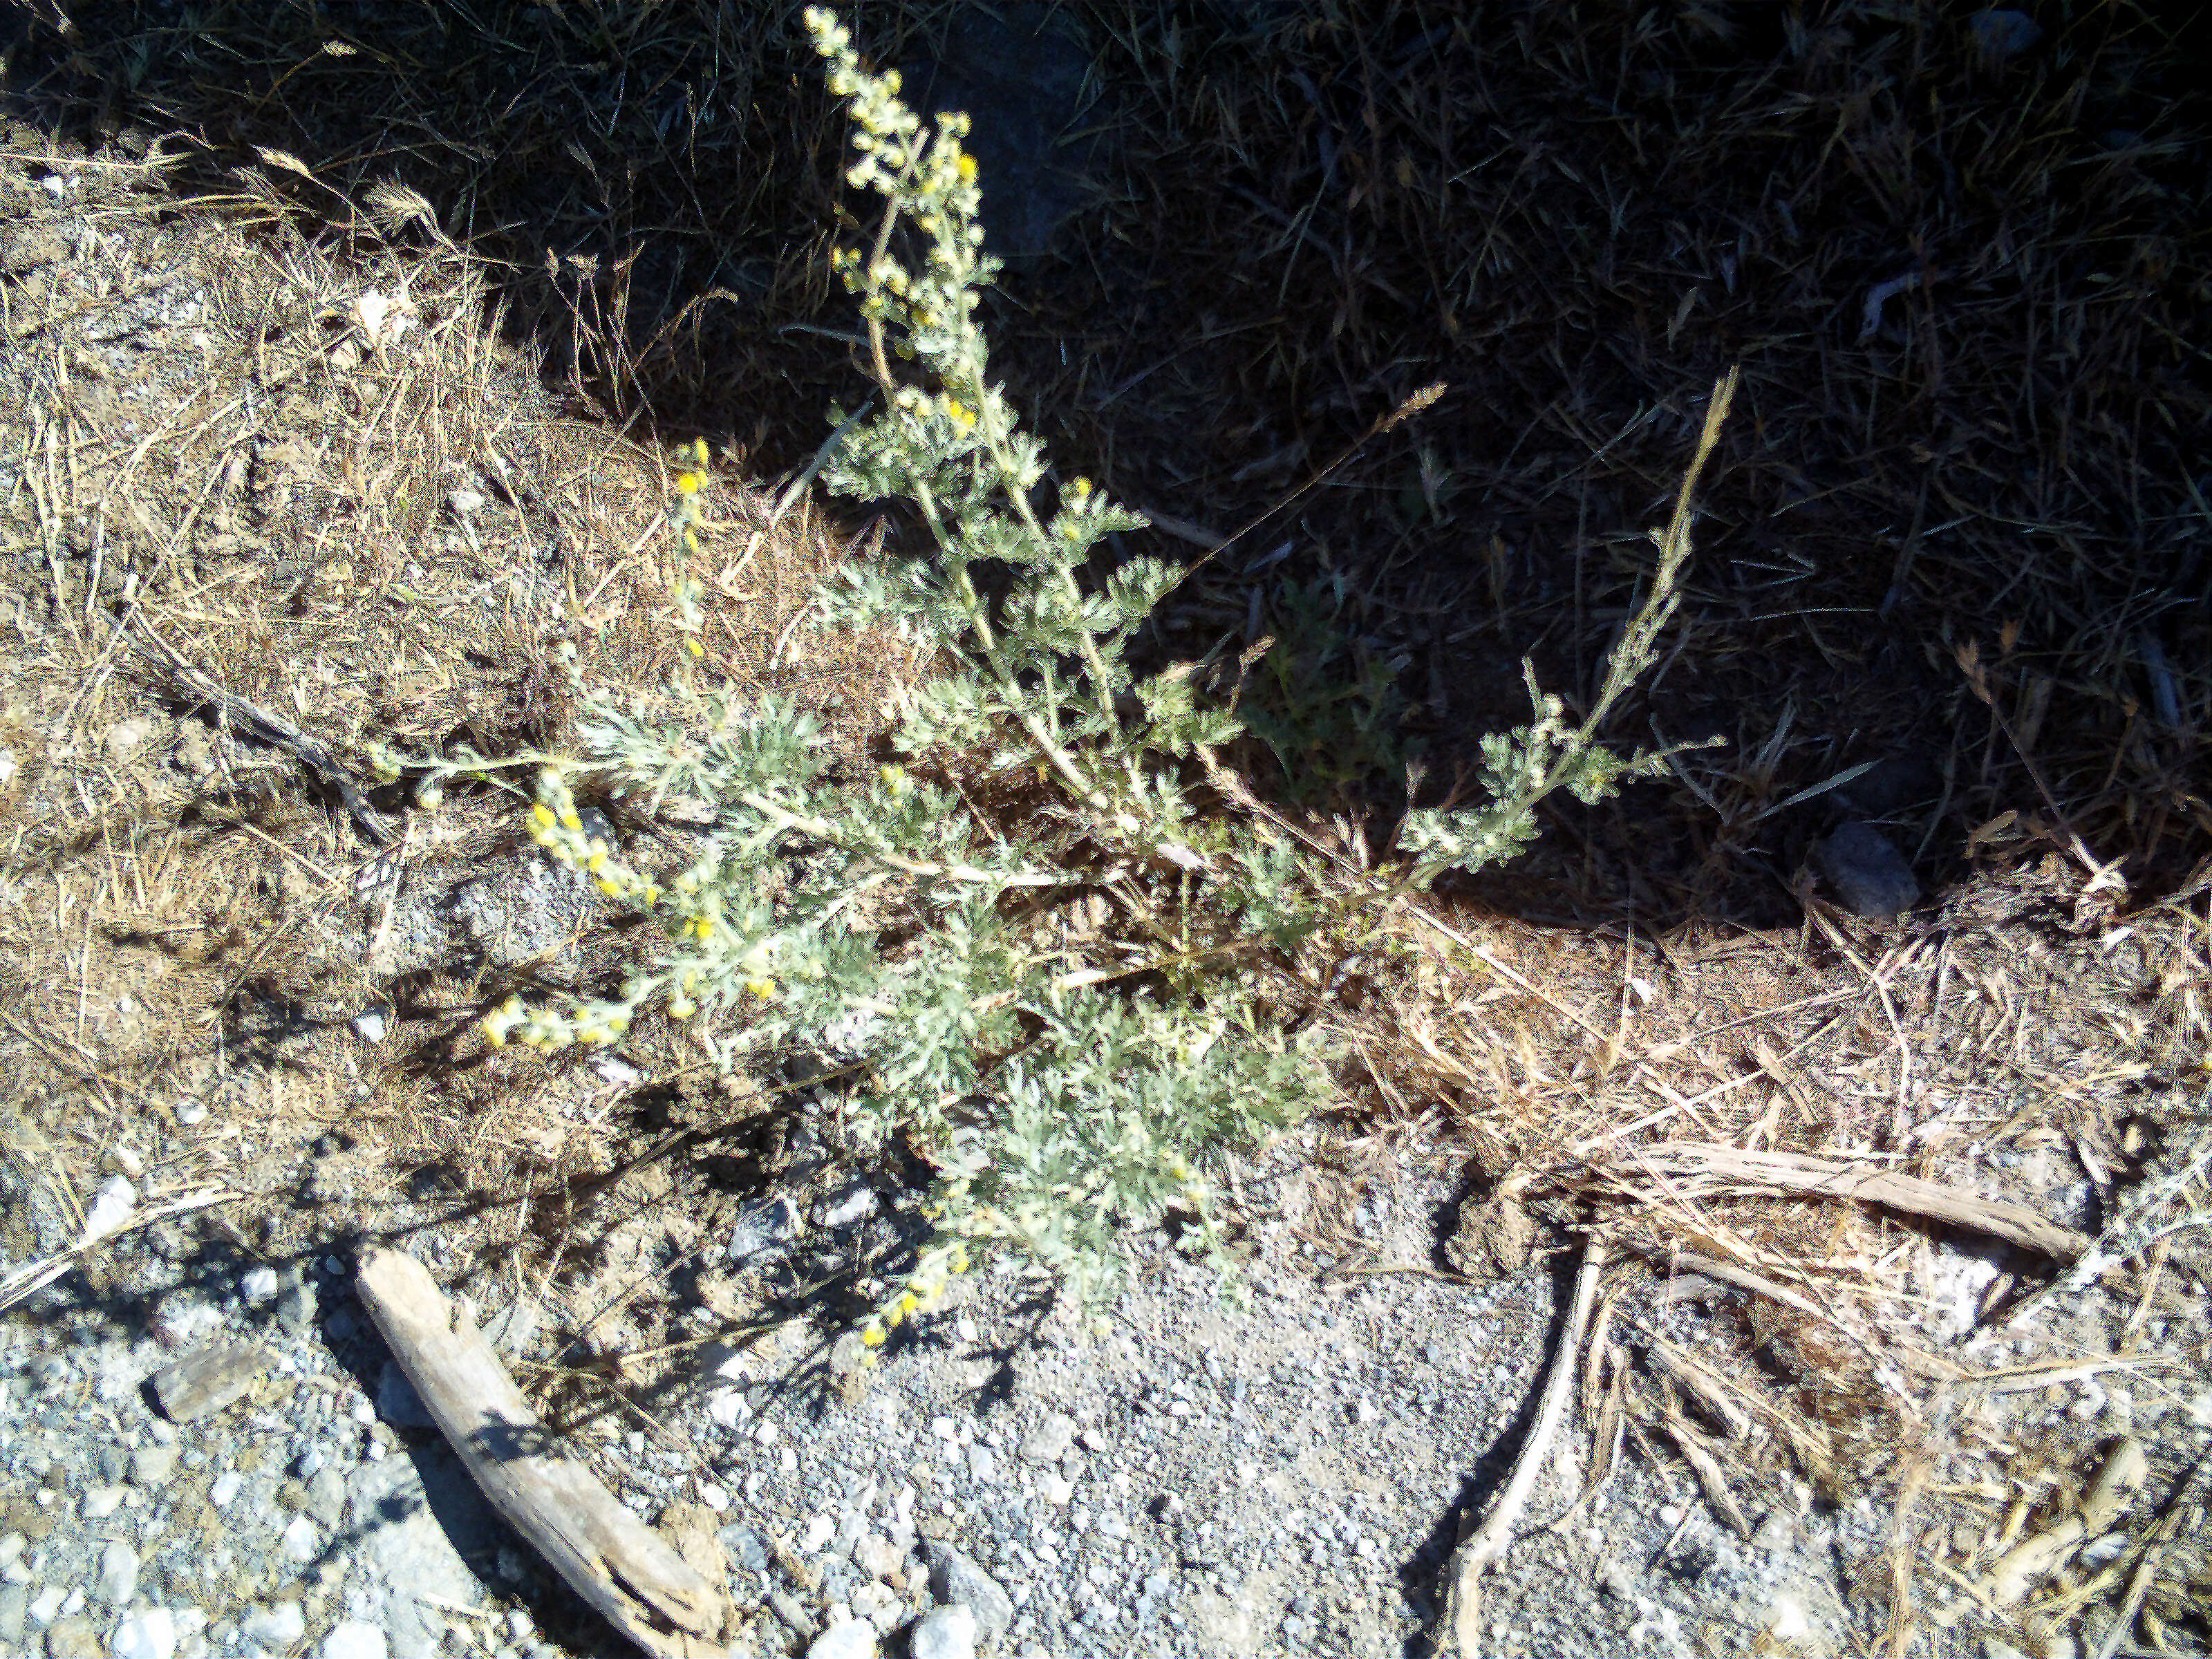 Image of Artemisia chamaemelifolia Vill.